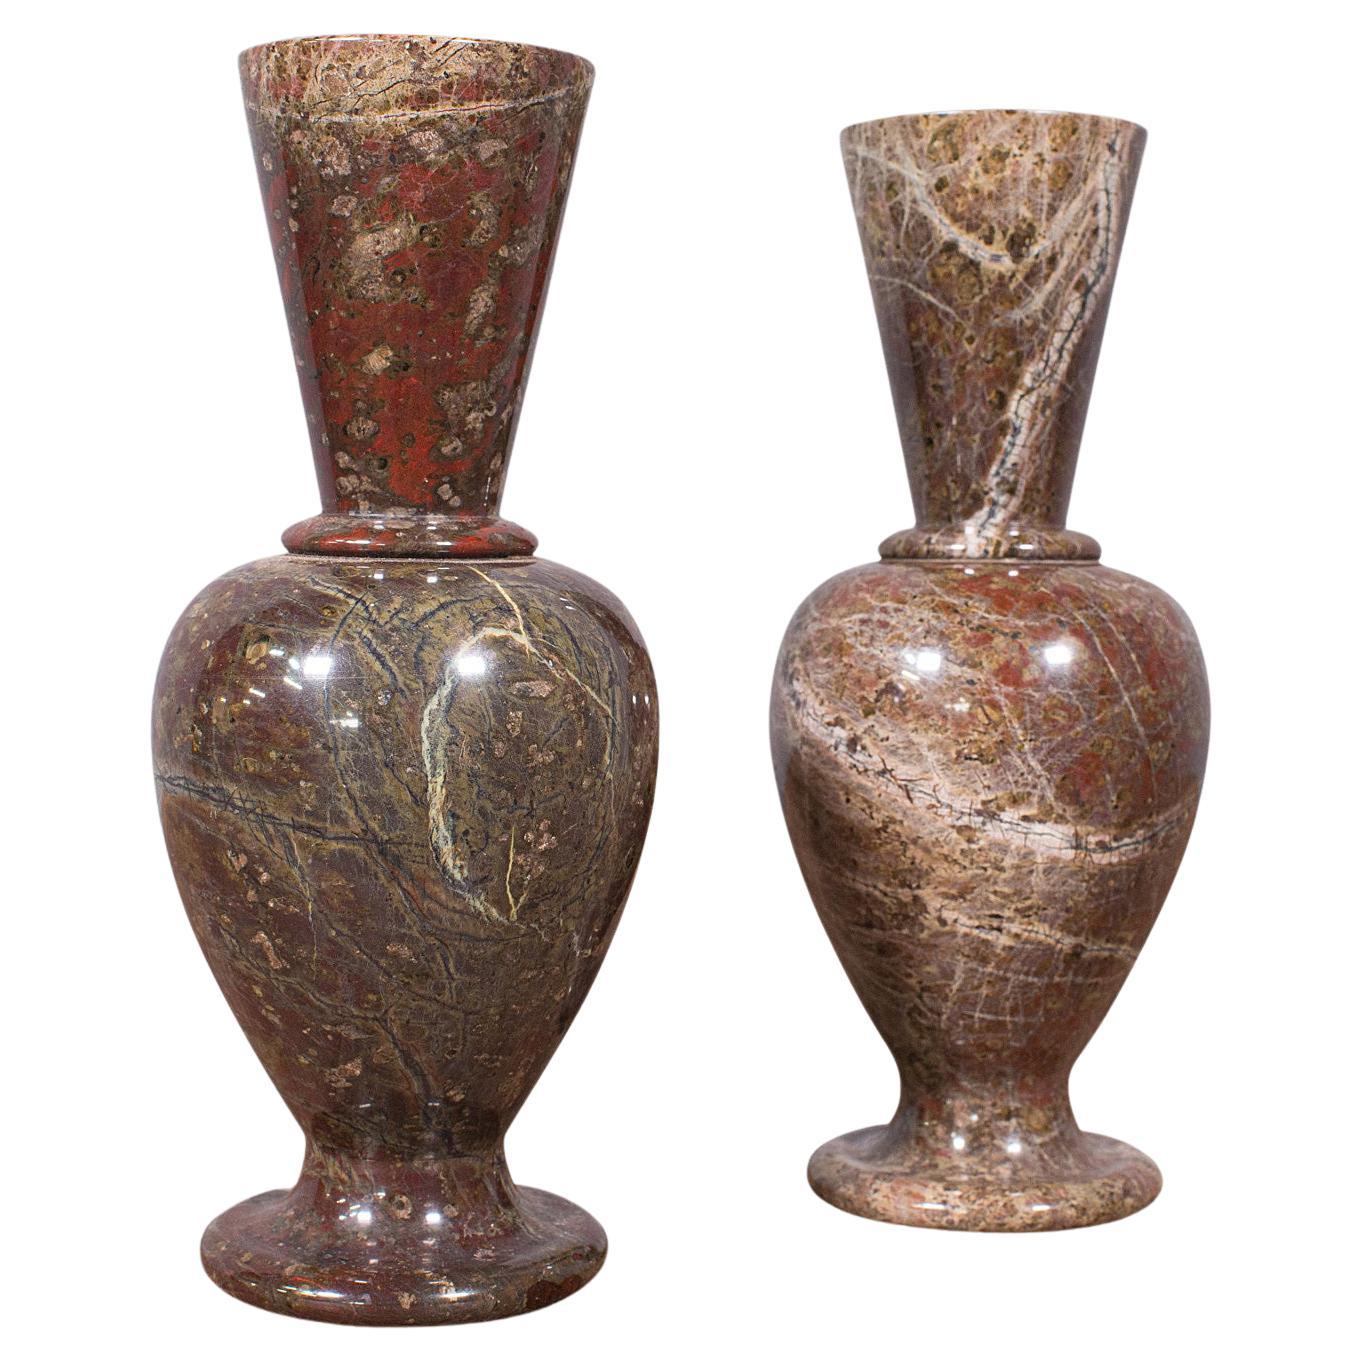 Paar antike dekorative Posy-Vasen, englisch, Granit, Blumenurne, viktorianisch